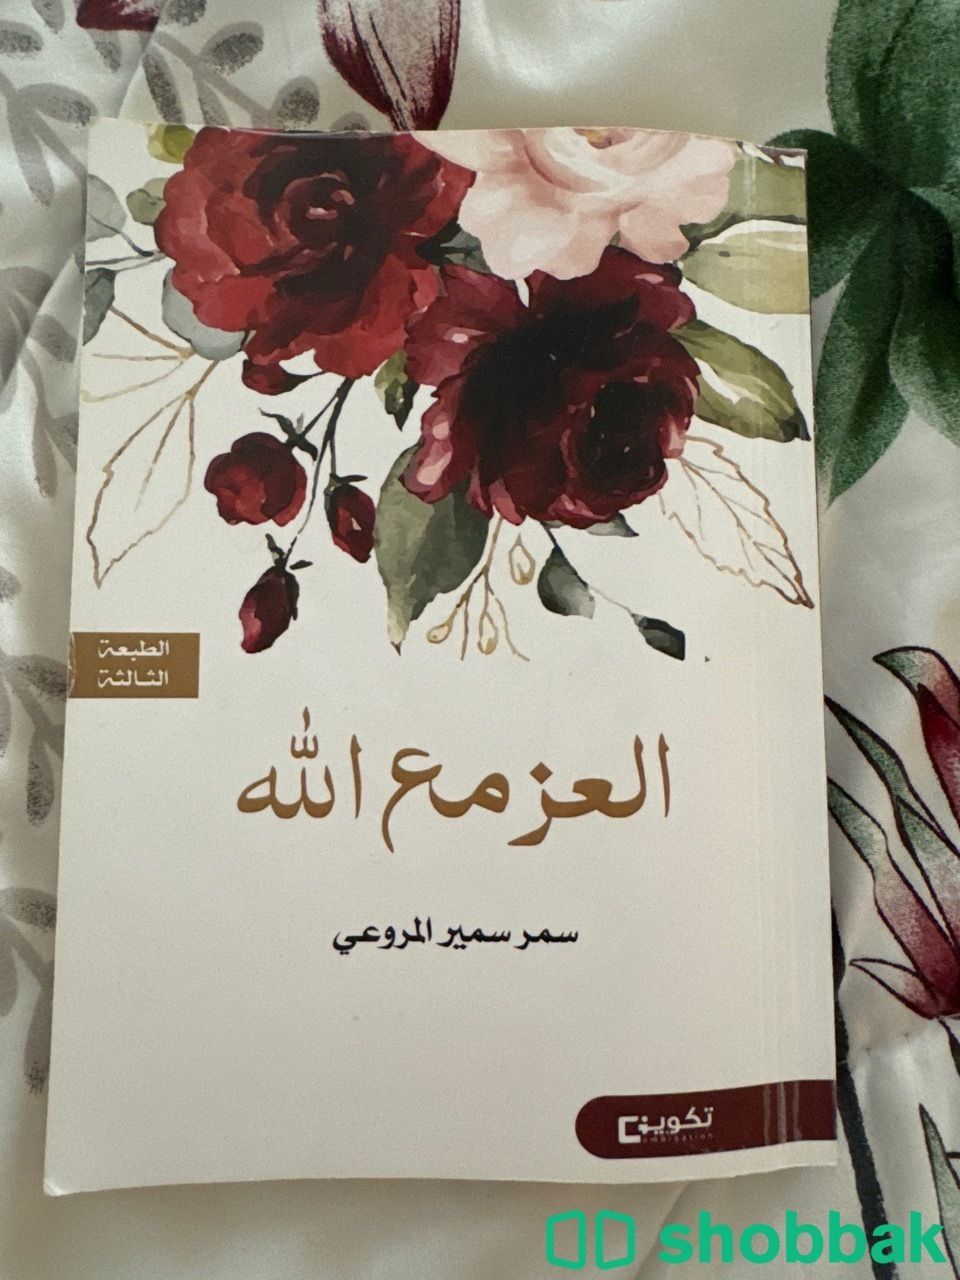 كتاب العز مع الله  Shobbak Saudi Arabia